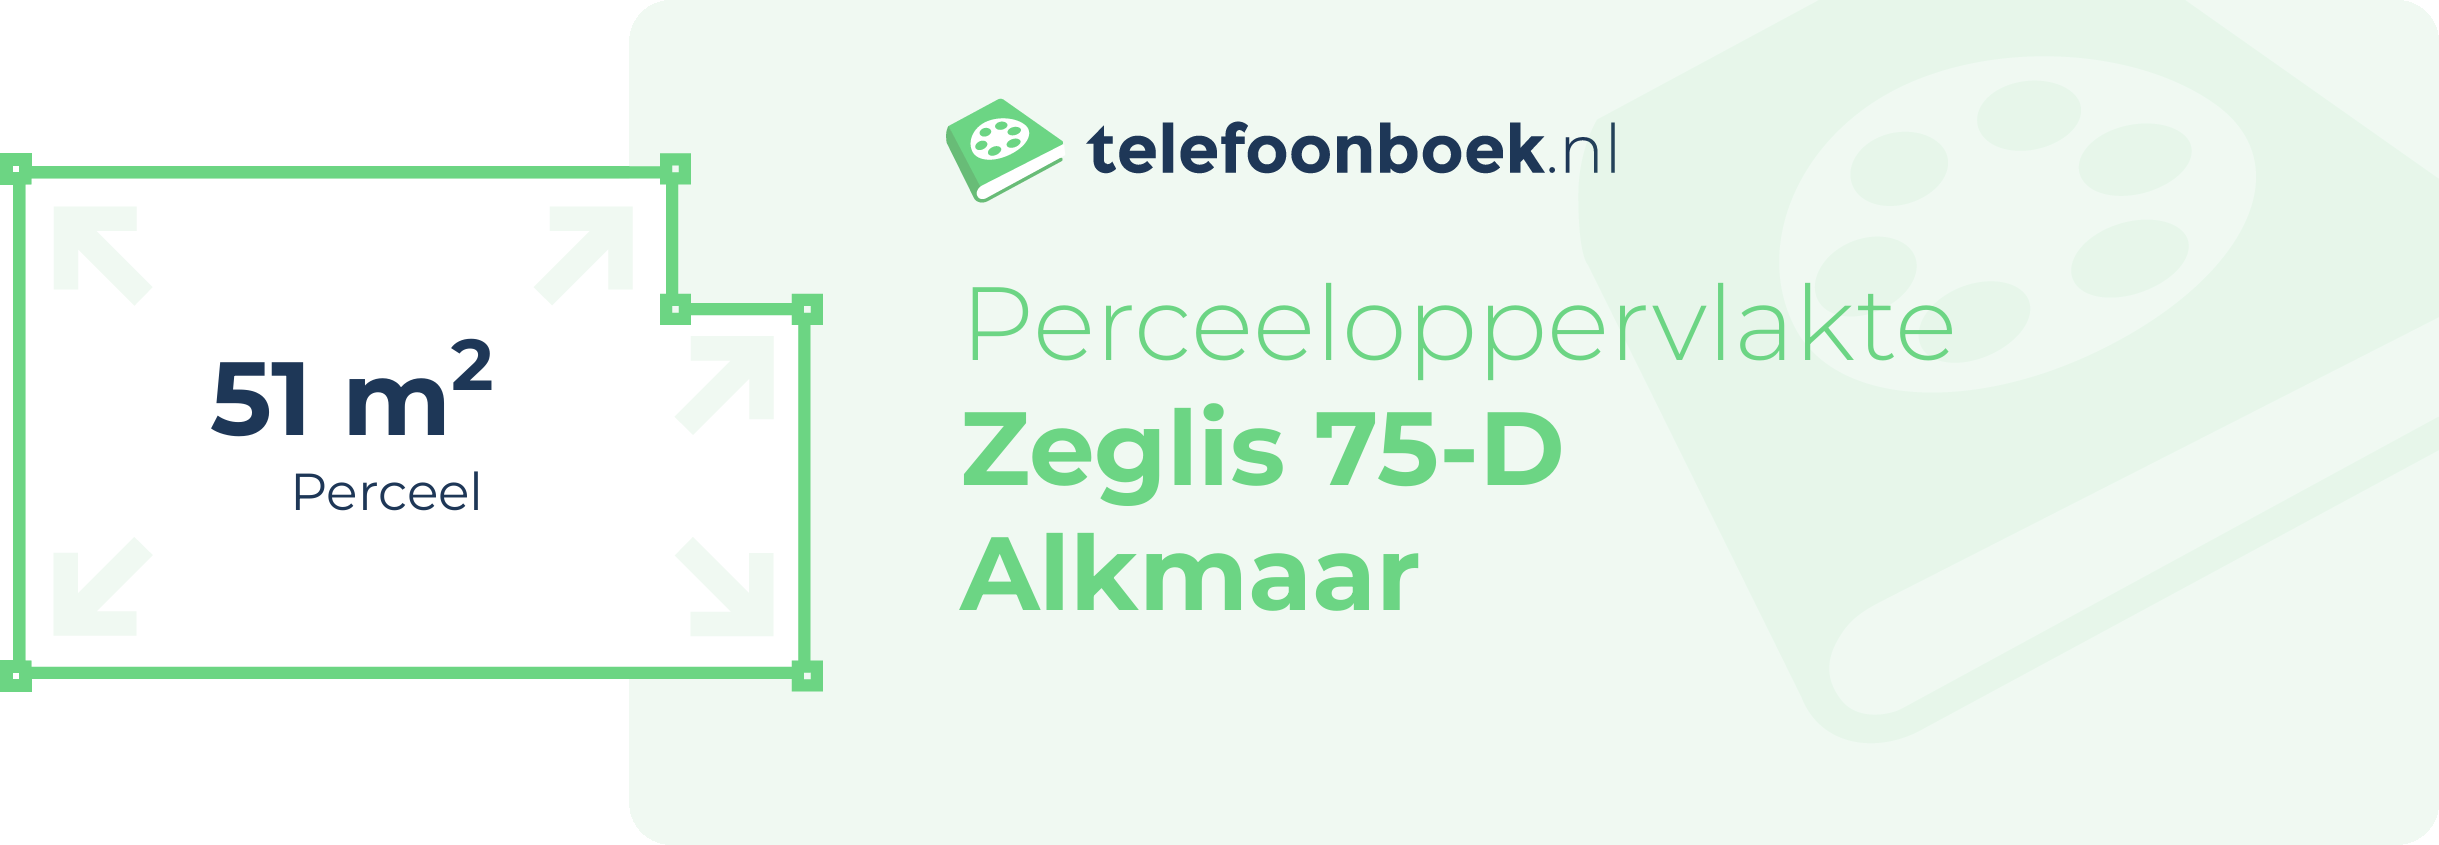 Perceeloppervlakte Zeglis 75-D Alkmaar